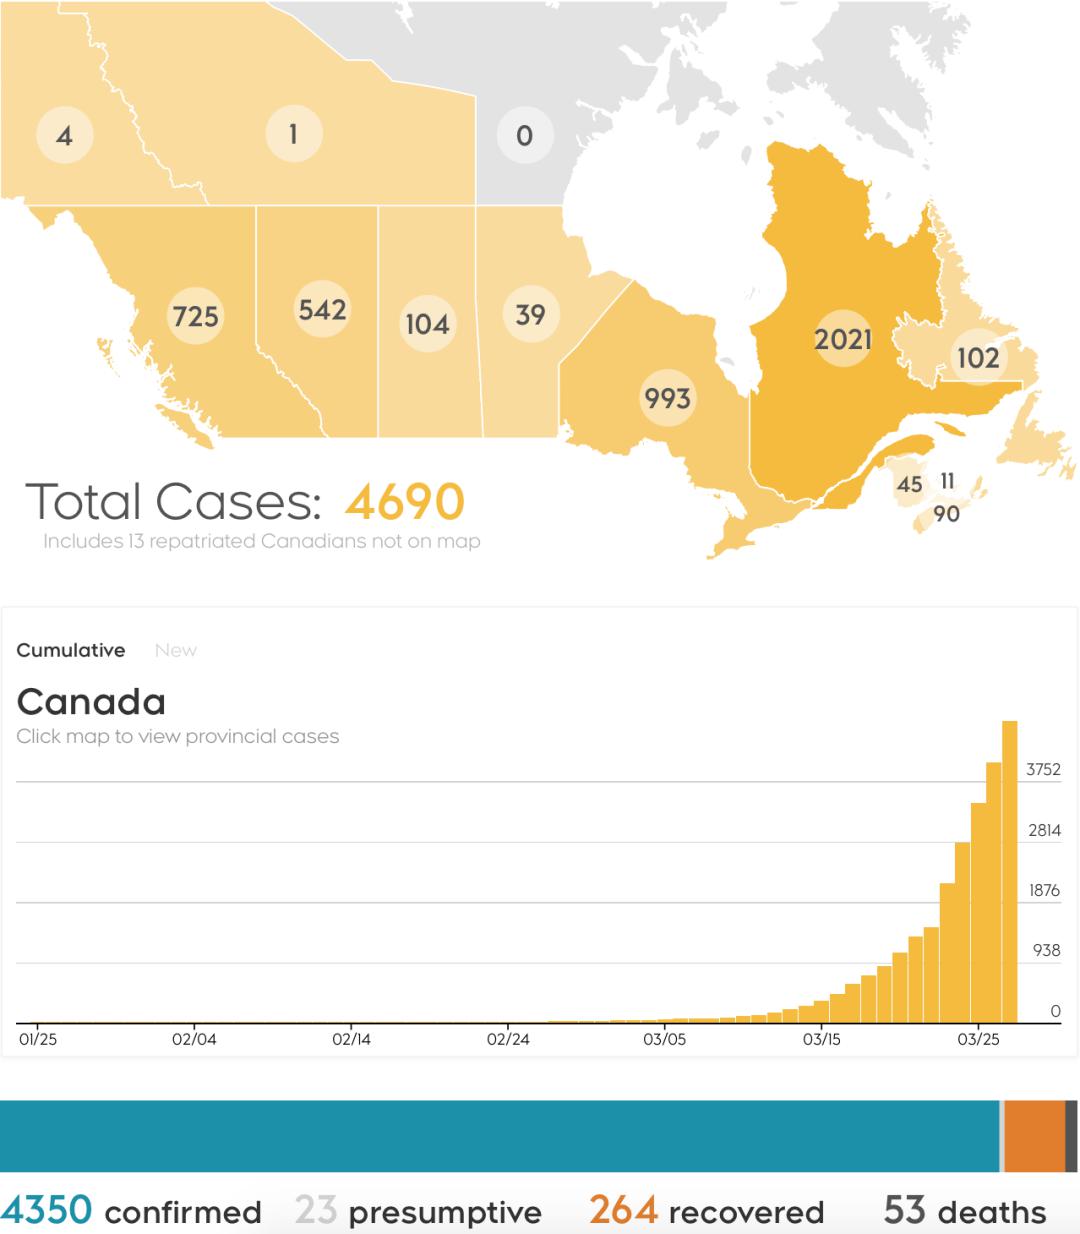 截止至今日下午6点,加拿大今日新增647例病例,总病例数达4690例,治愈